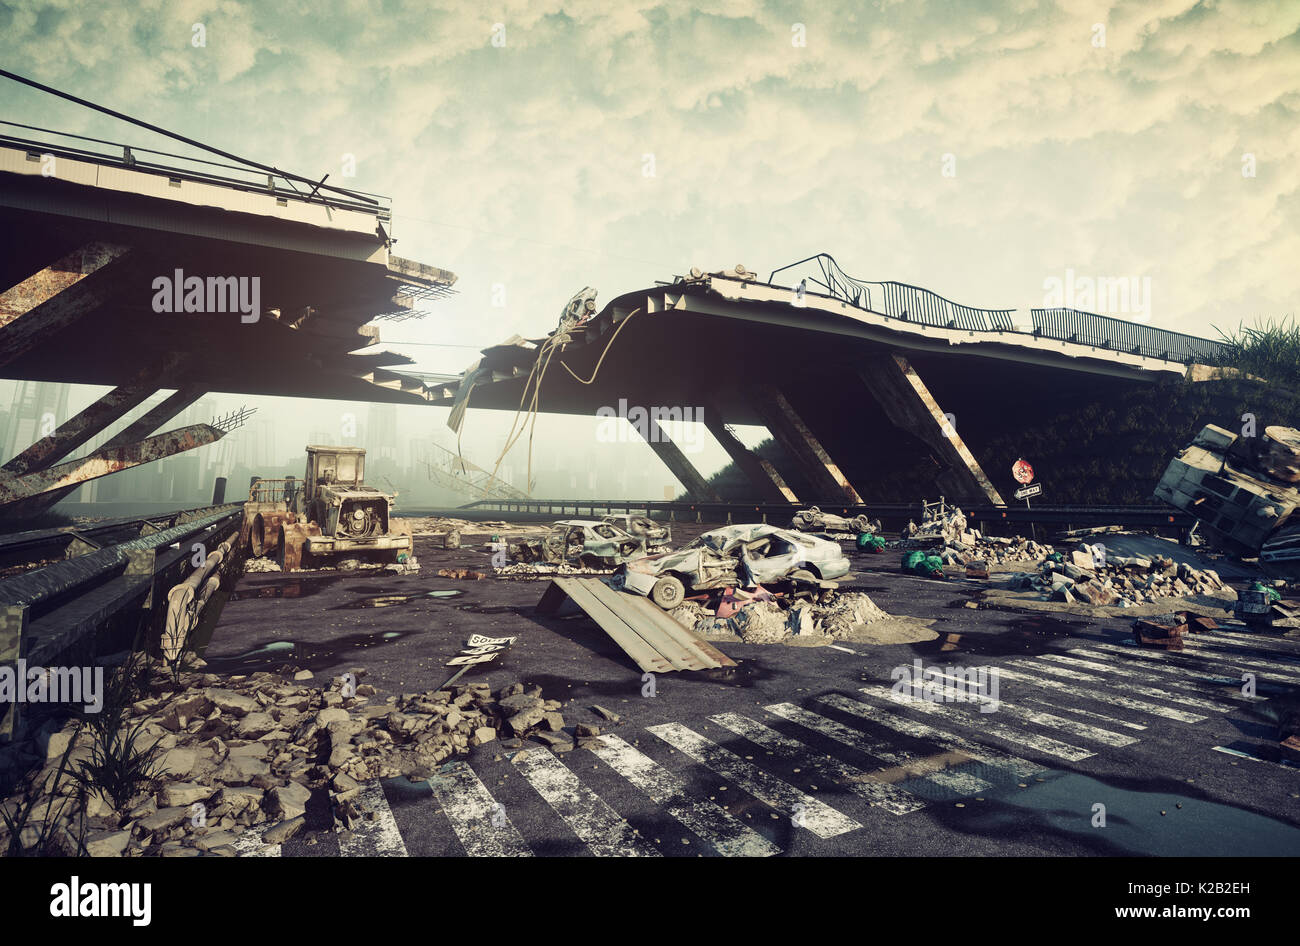 Le rovine di una città autostrada. Paesaggio apocalittico.3d illustrazione concept Foto Stock